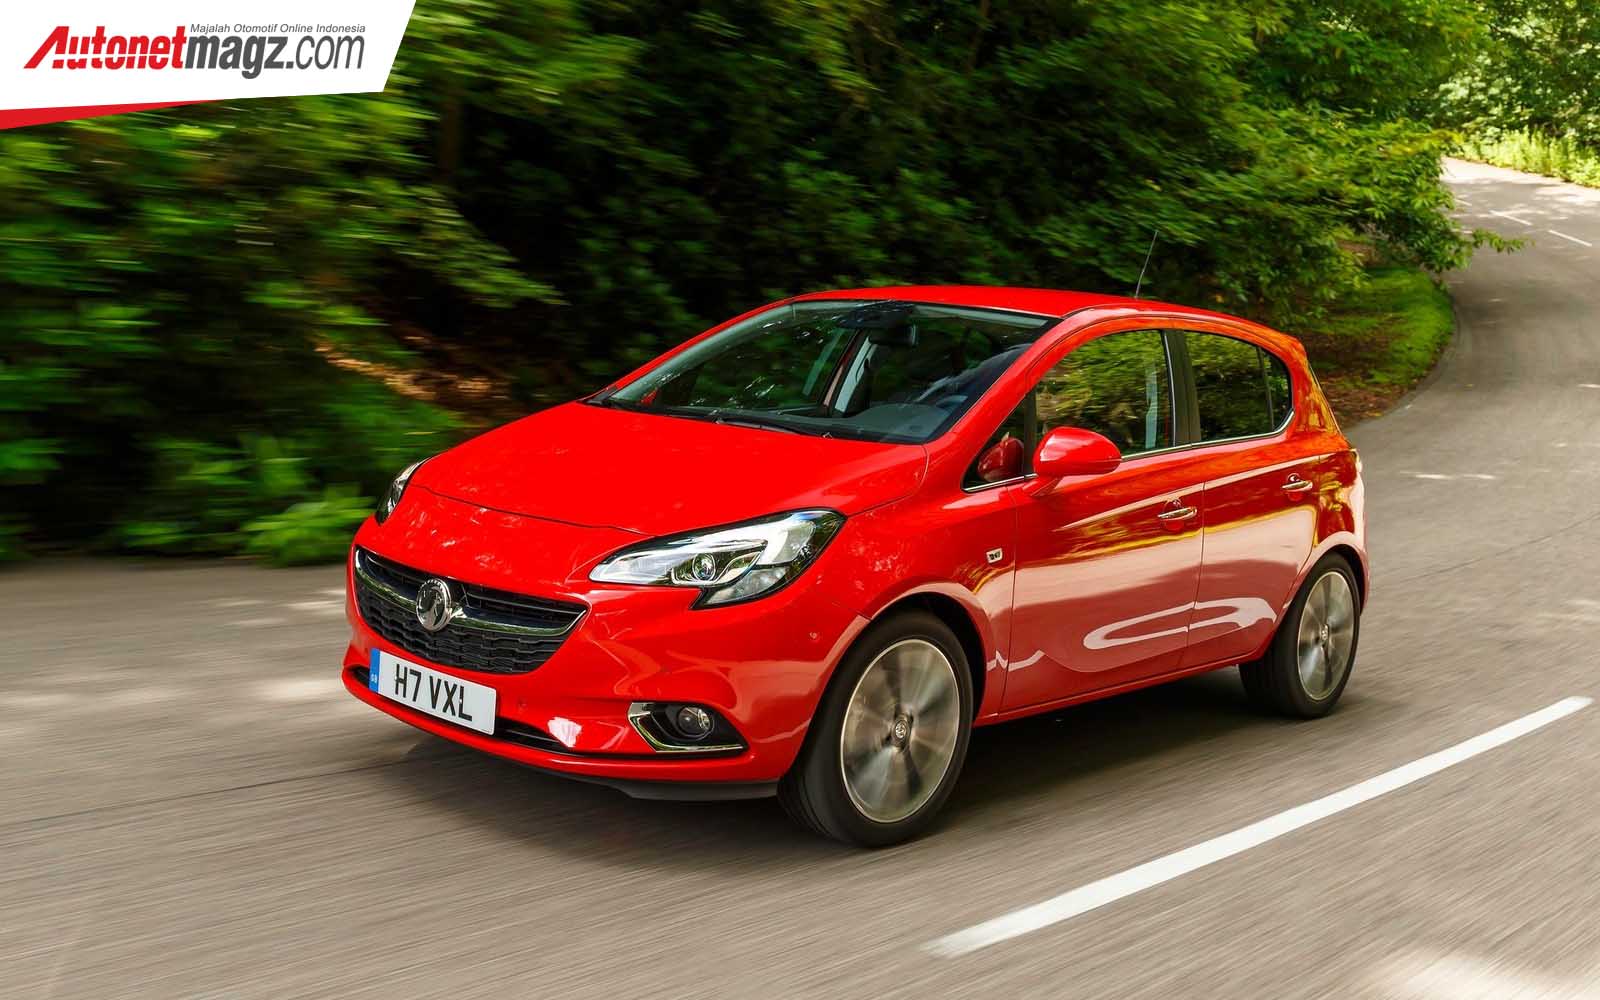 Berita, Vauxhall Corsa: Penjualan Mobil di Eropa Turun Karena WLTP!